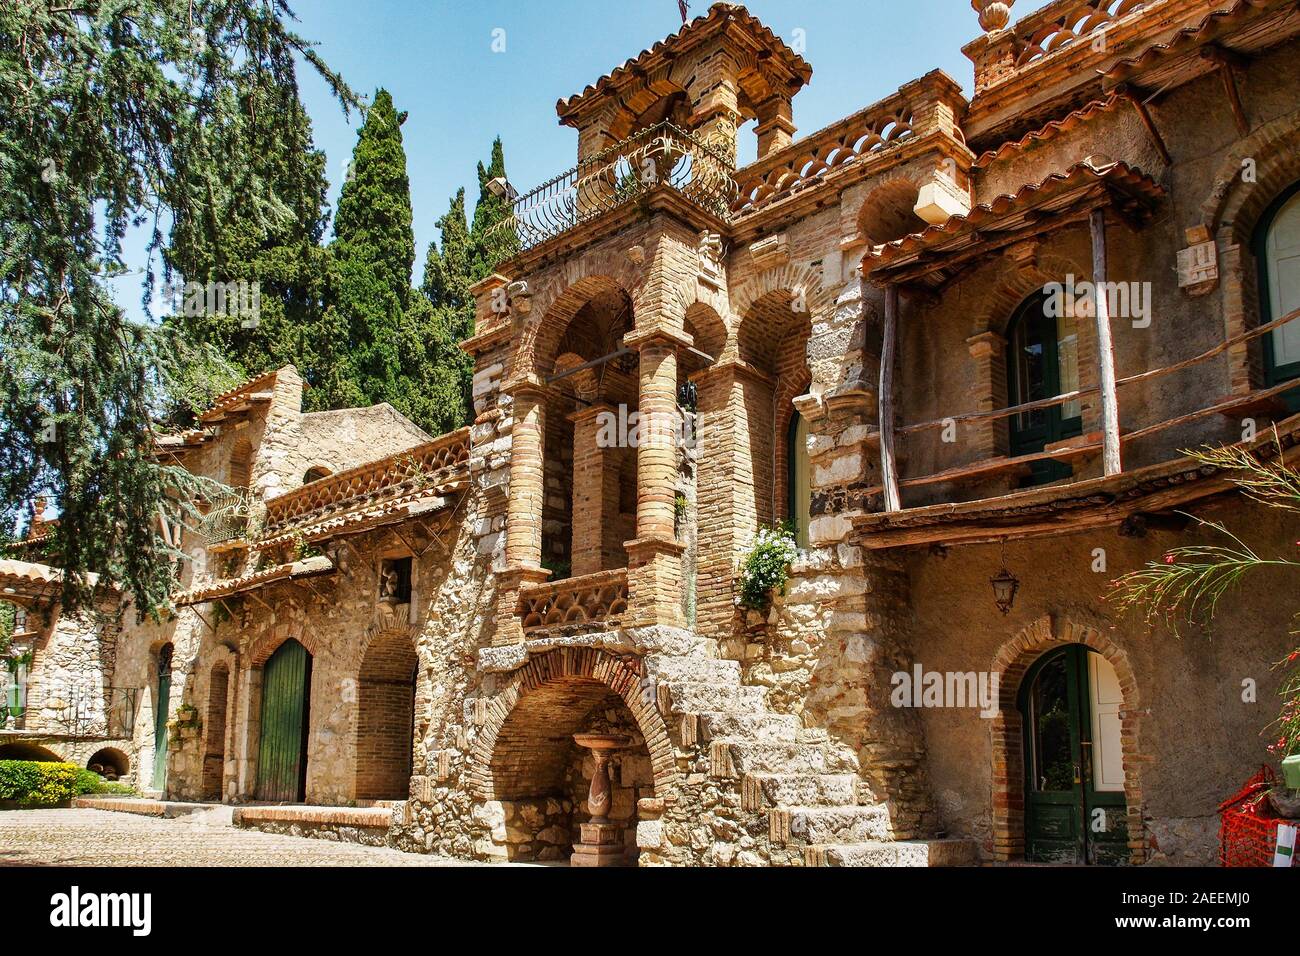 The Park Giardini della villa comunale in Taormina, Sicily, Italy Stock Photo